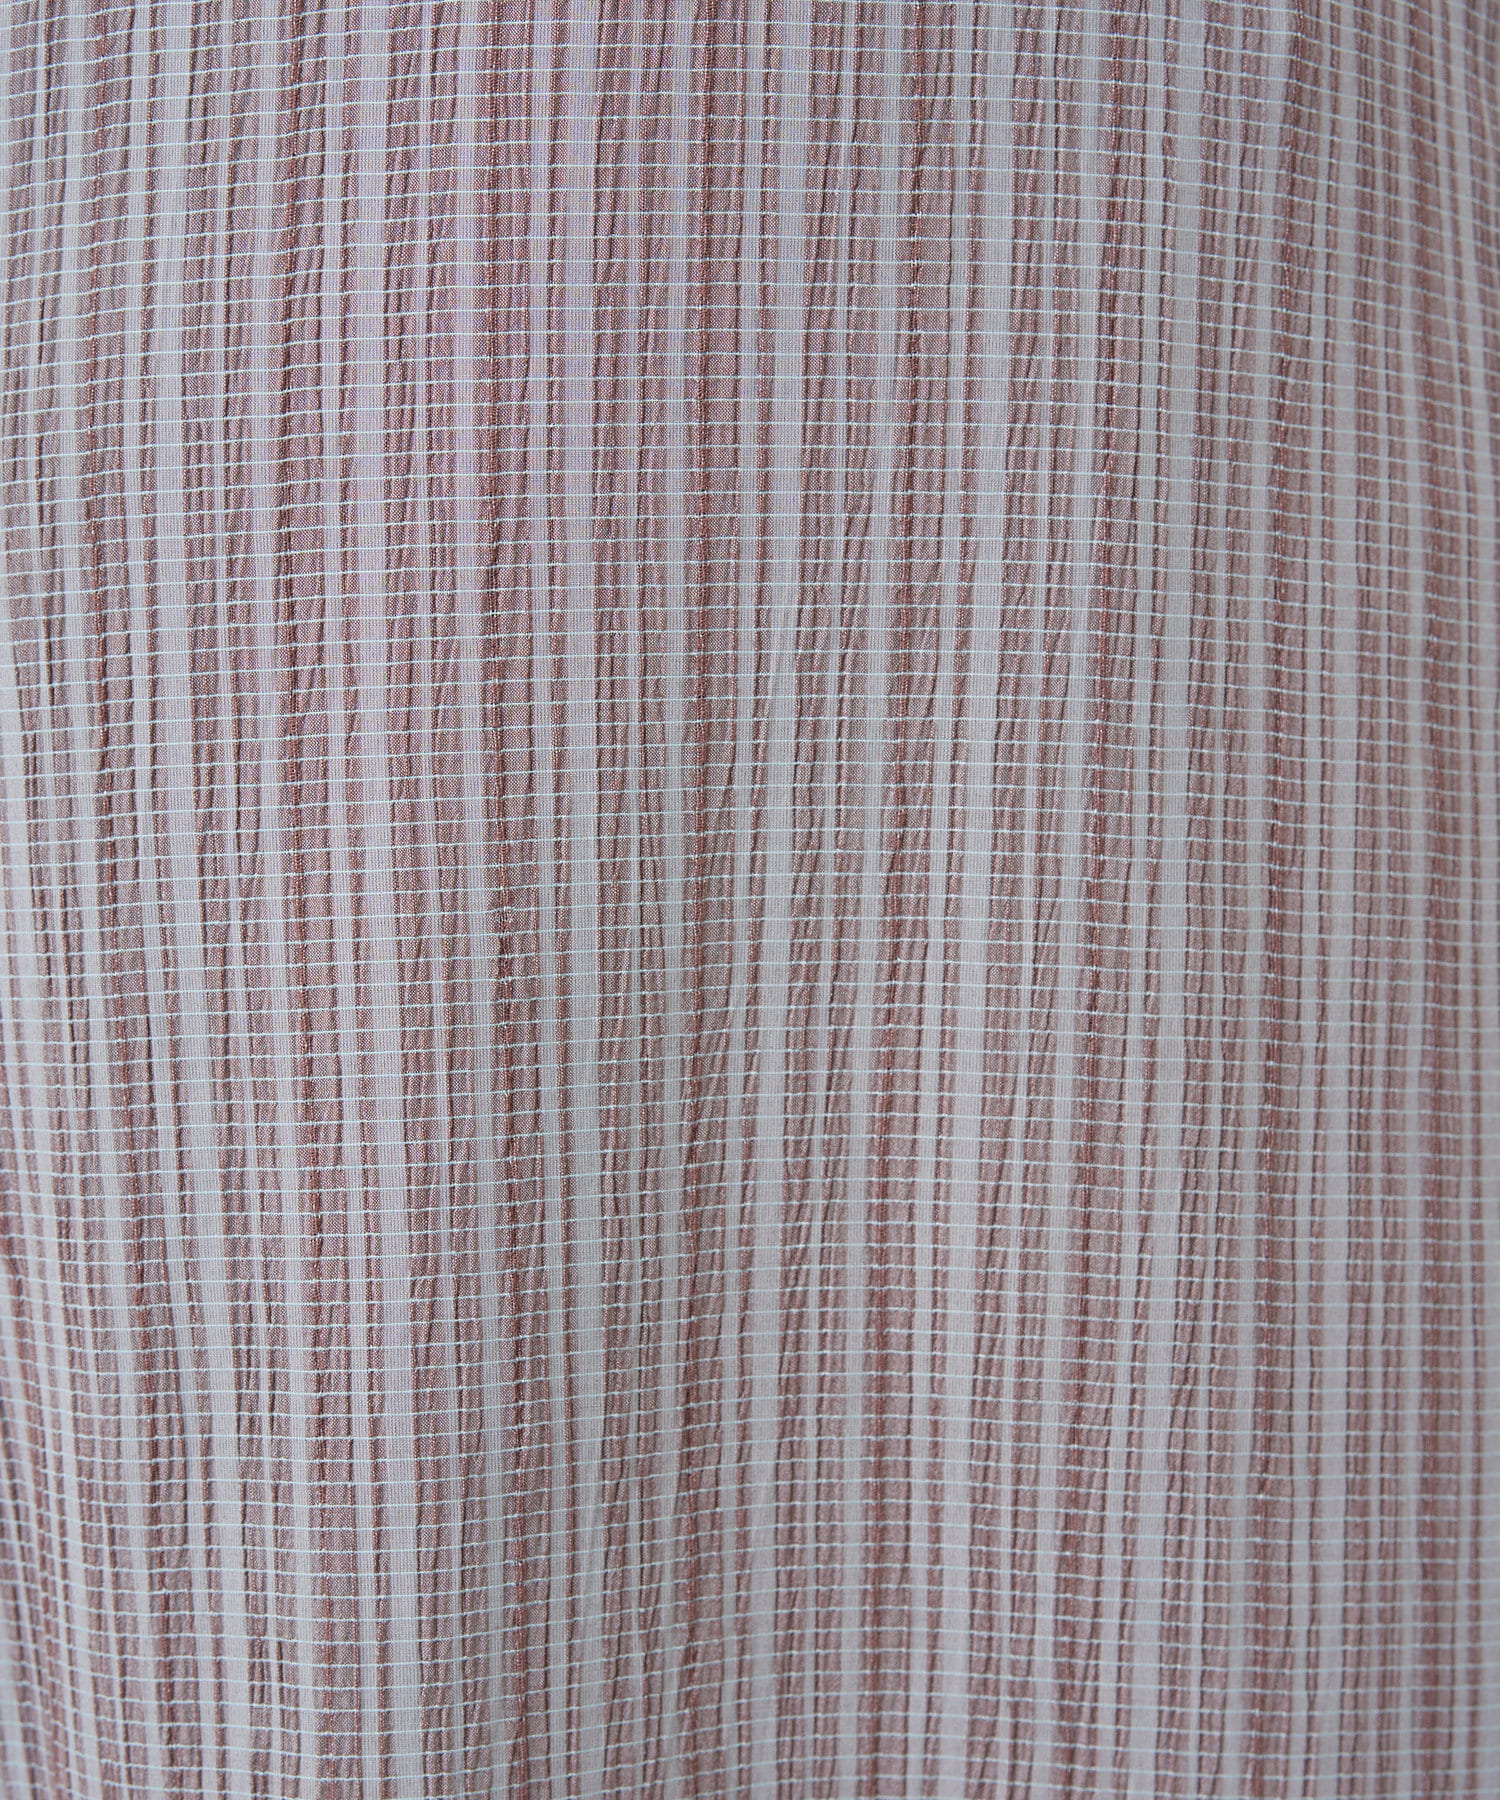 natural couture(ナチュラルクチュール) 【WEB限定カラー有り】変わり織りドビーチェックスカート